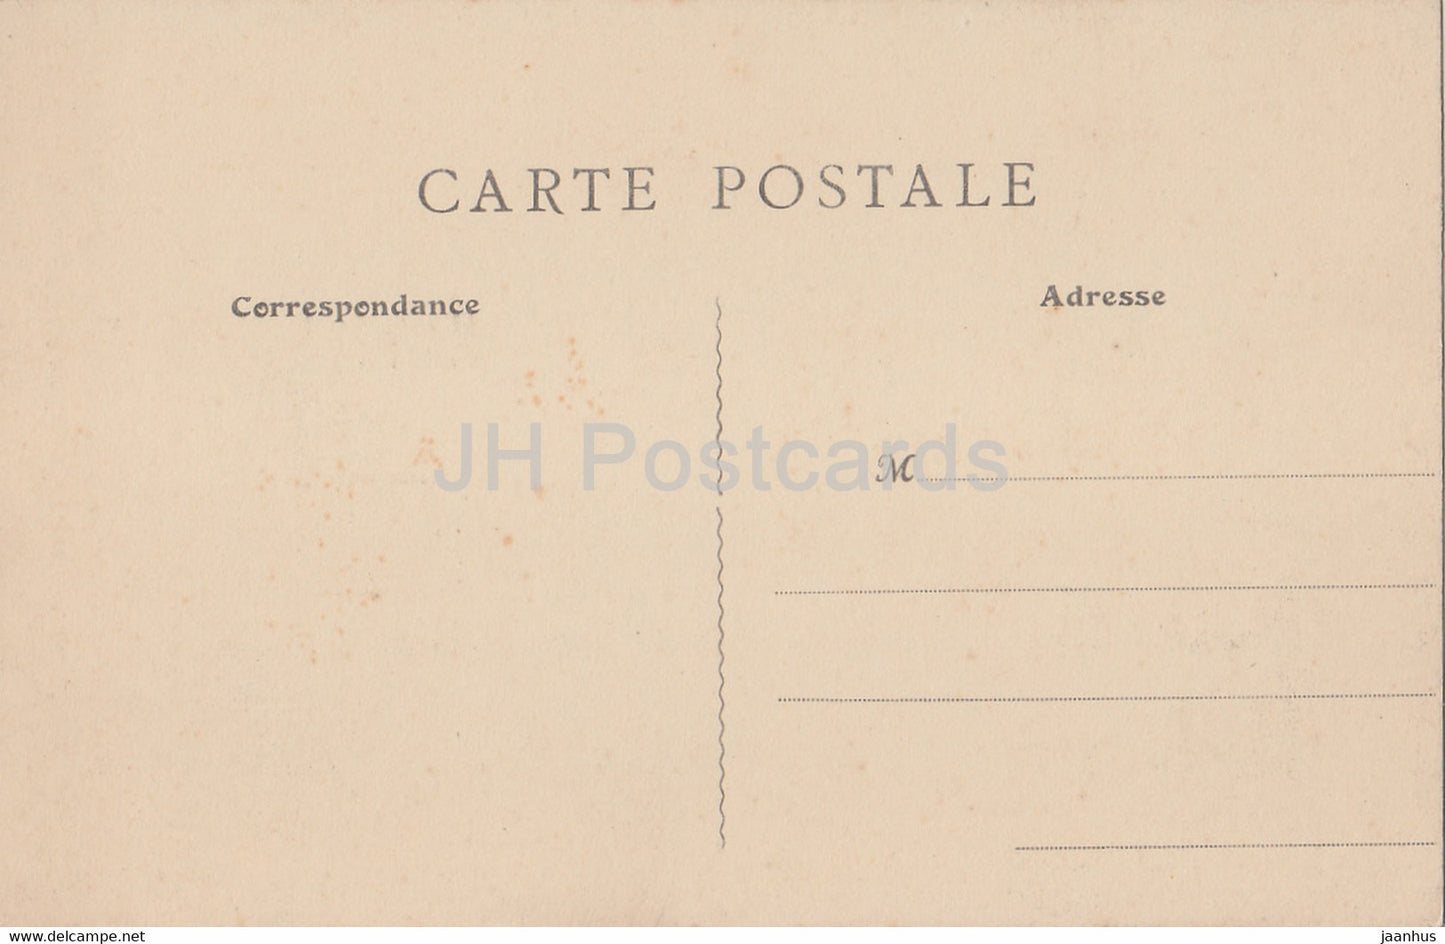 Asnieres - Cimetiere des Chiens - Barry - Chien sauveieur - 28 - alte Postkarte - Frankreich - unbenutzt